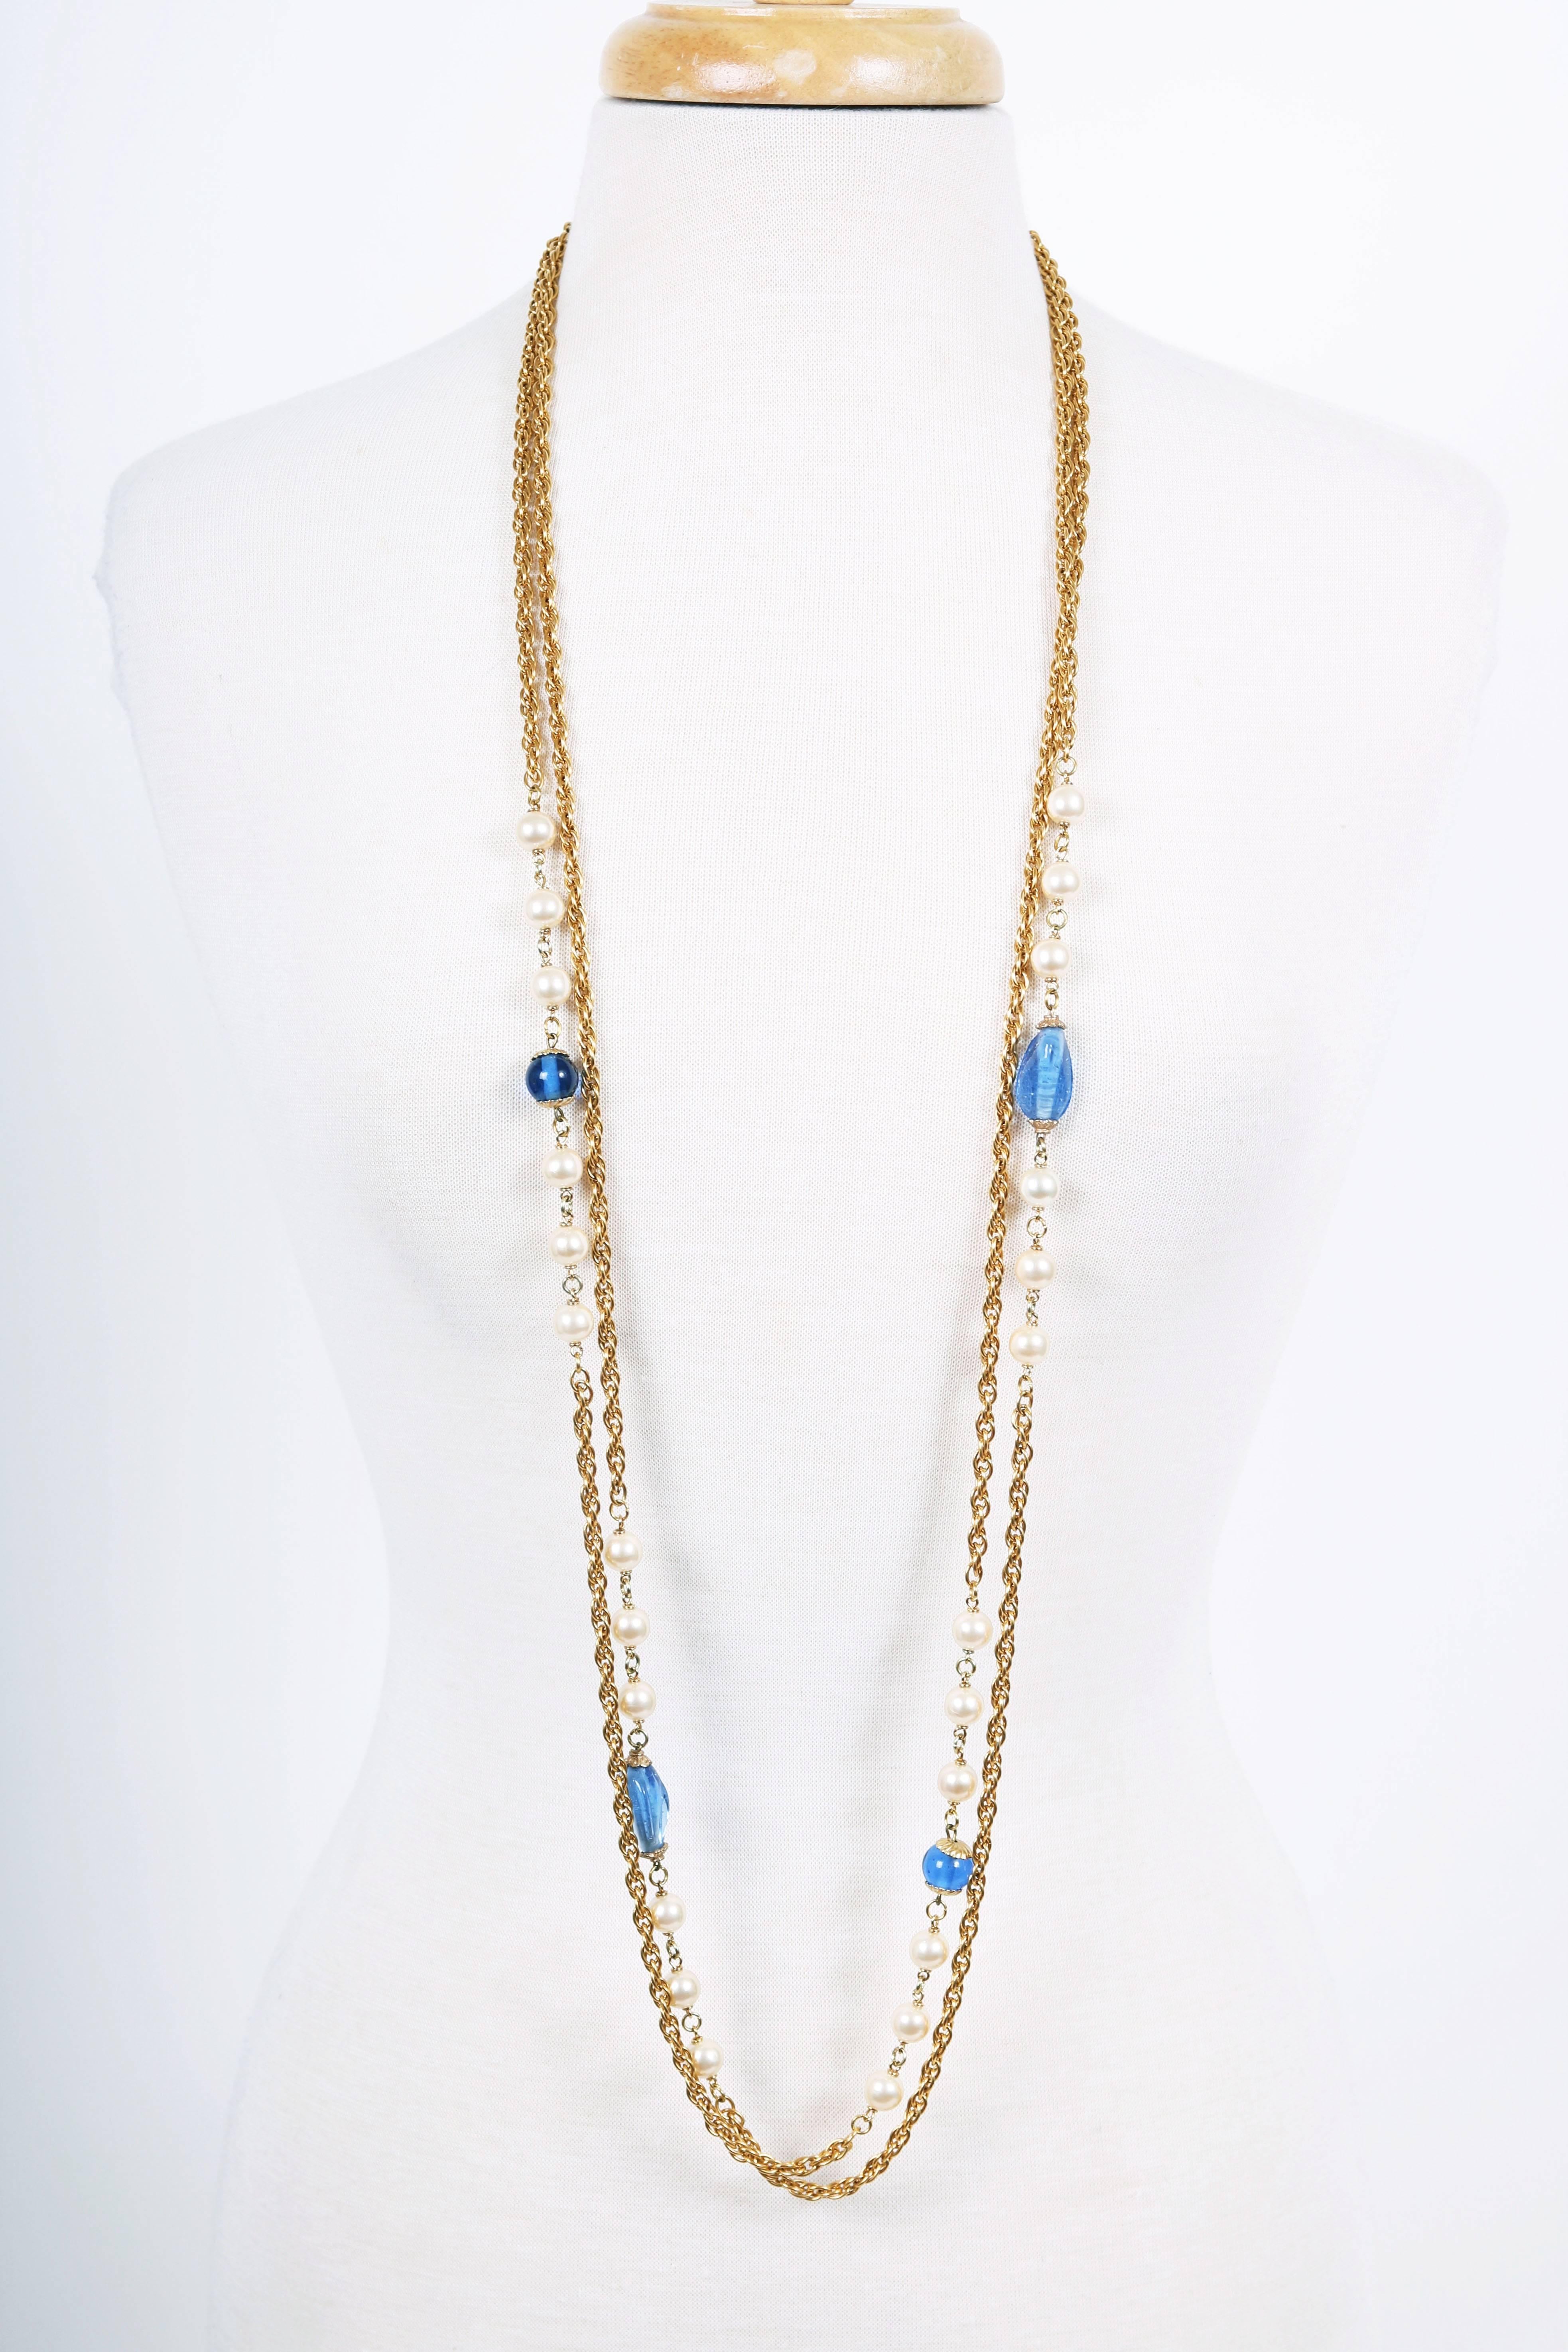 Sautoir Chanel à double brin en chaîne dorée du début au milieu des années 1980, entrelacé d'un motif alternant gripoix bleu (en deux formes) et perles rondes. Le collier se ferme à l'aide d'un anneau à ressort et d'un fermoir pivotant. Une